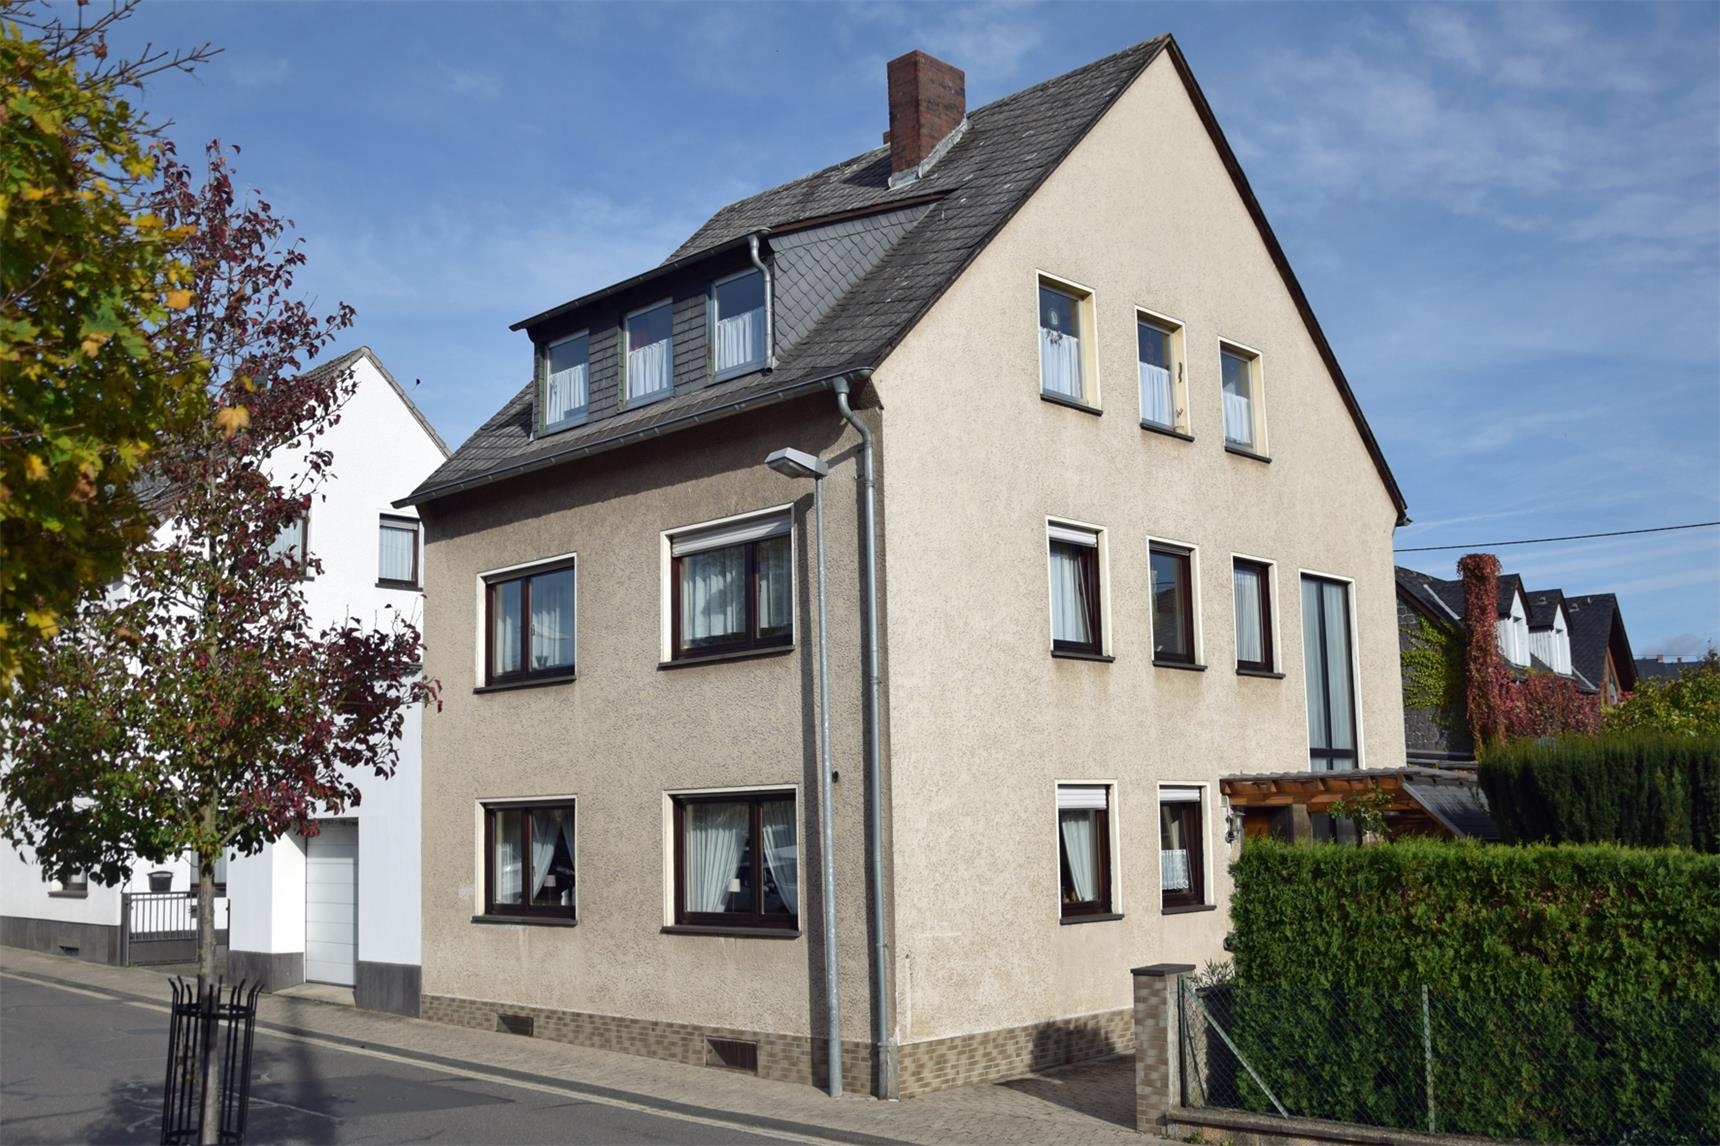 Eröffnung "Wohnung in der Hospitalstraße" in Mendig mit 2 Wohnplätzen 